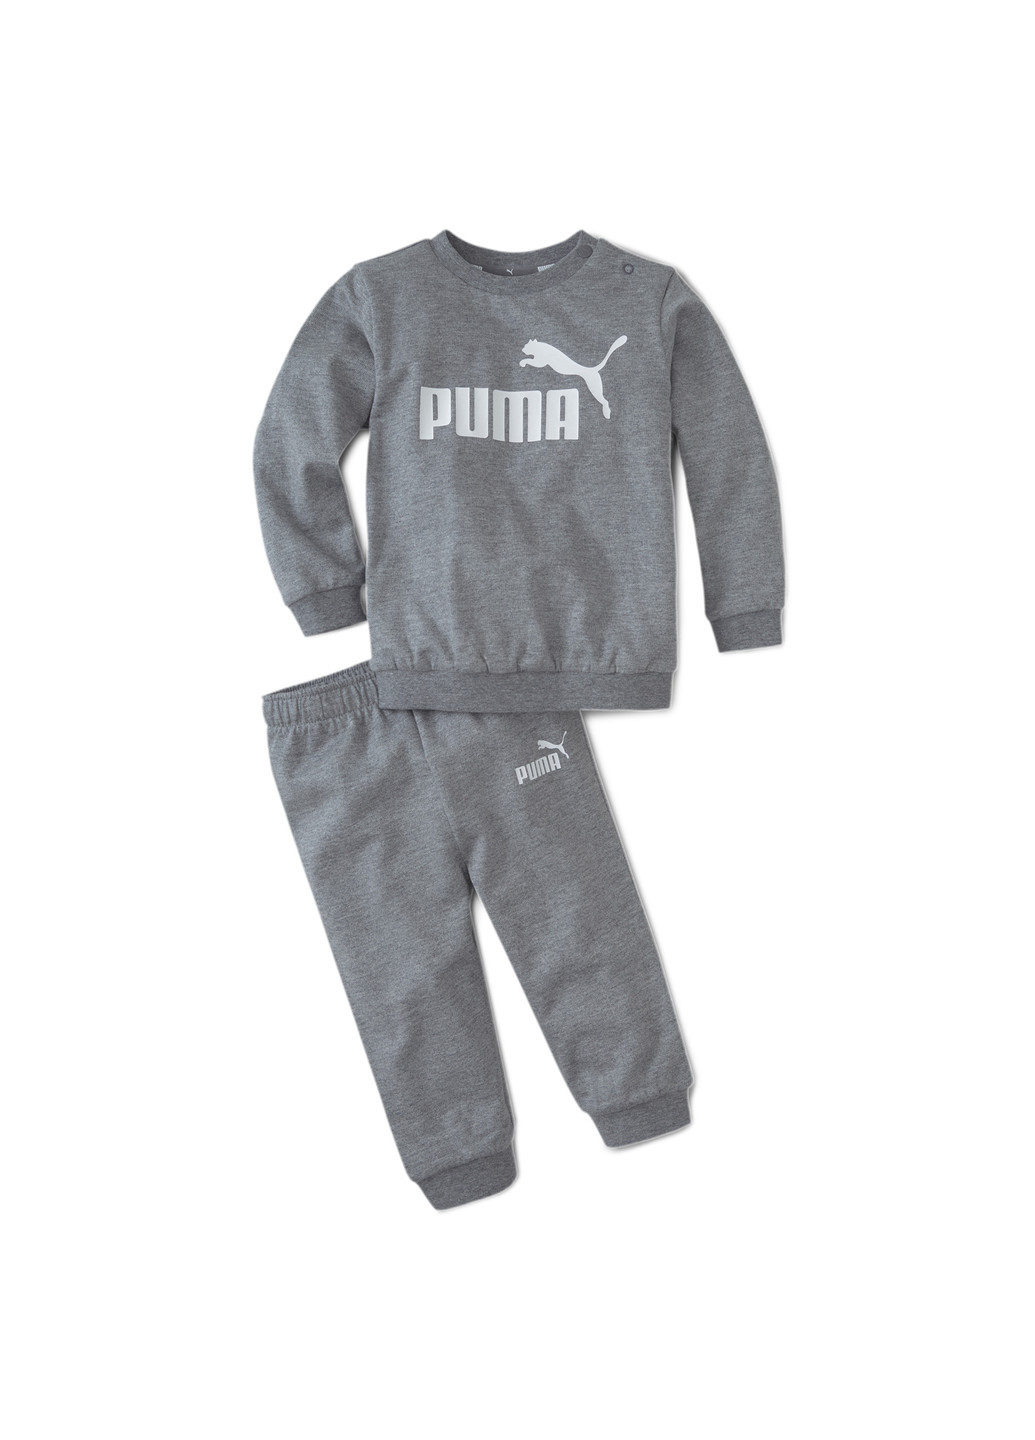 Комплект детский Puma Minicats Crew Jogger серый спортивный